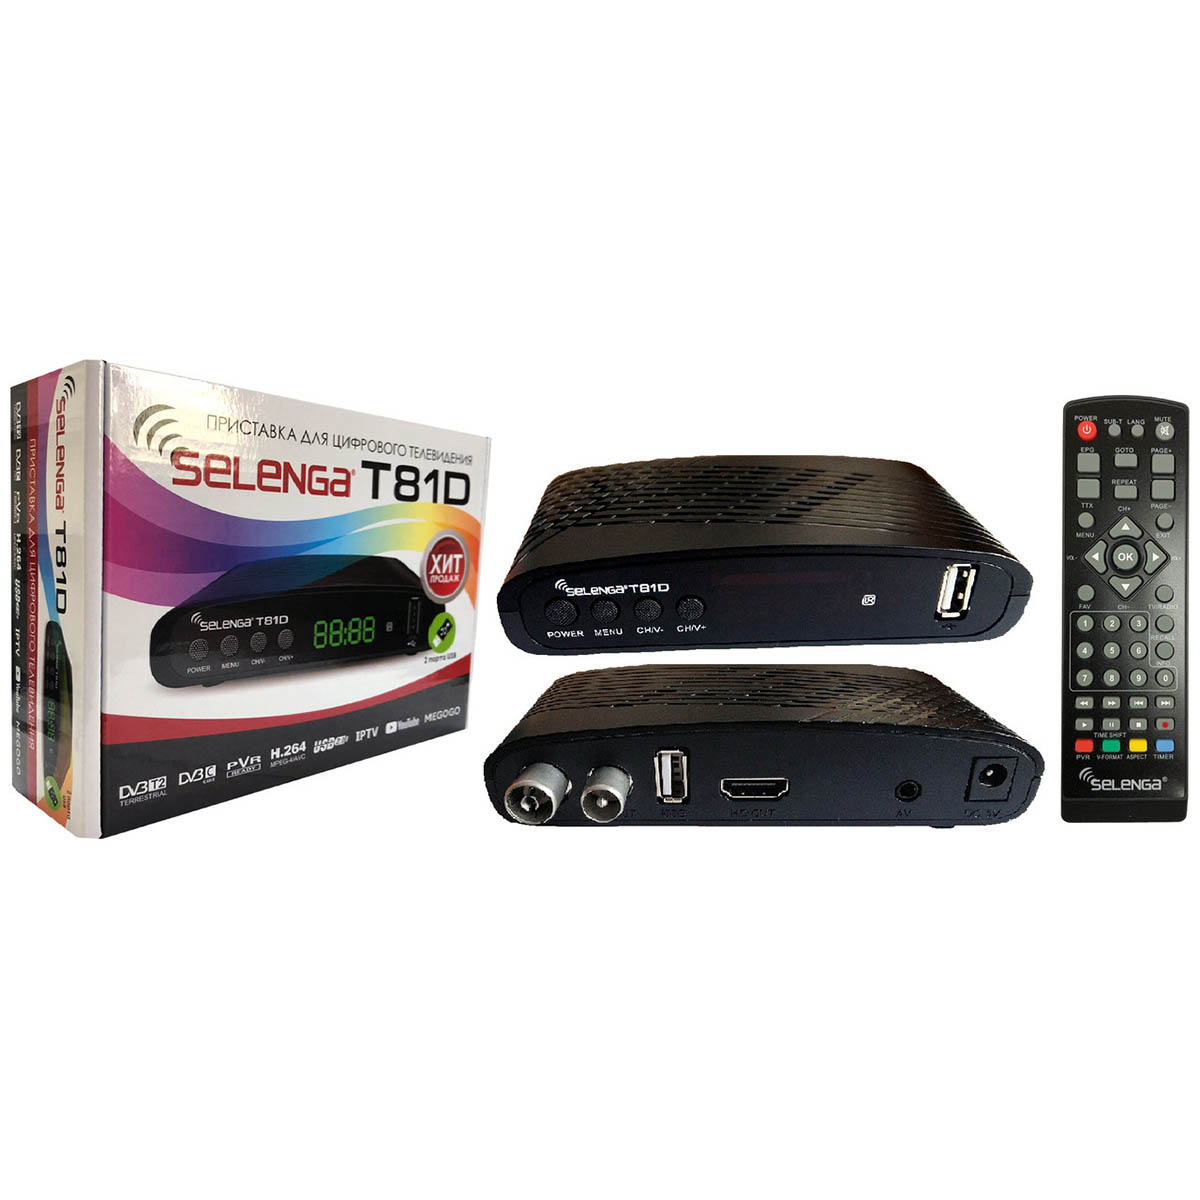 Цифровой эфирный приёмник, ТВ приставка Selenga T81D, DVB-T2, DVB-С, цвет черный